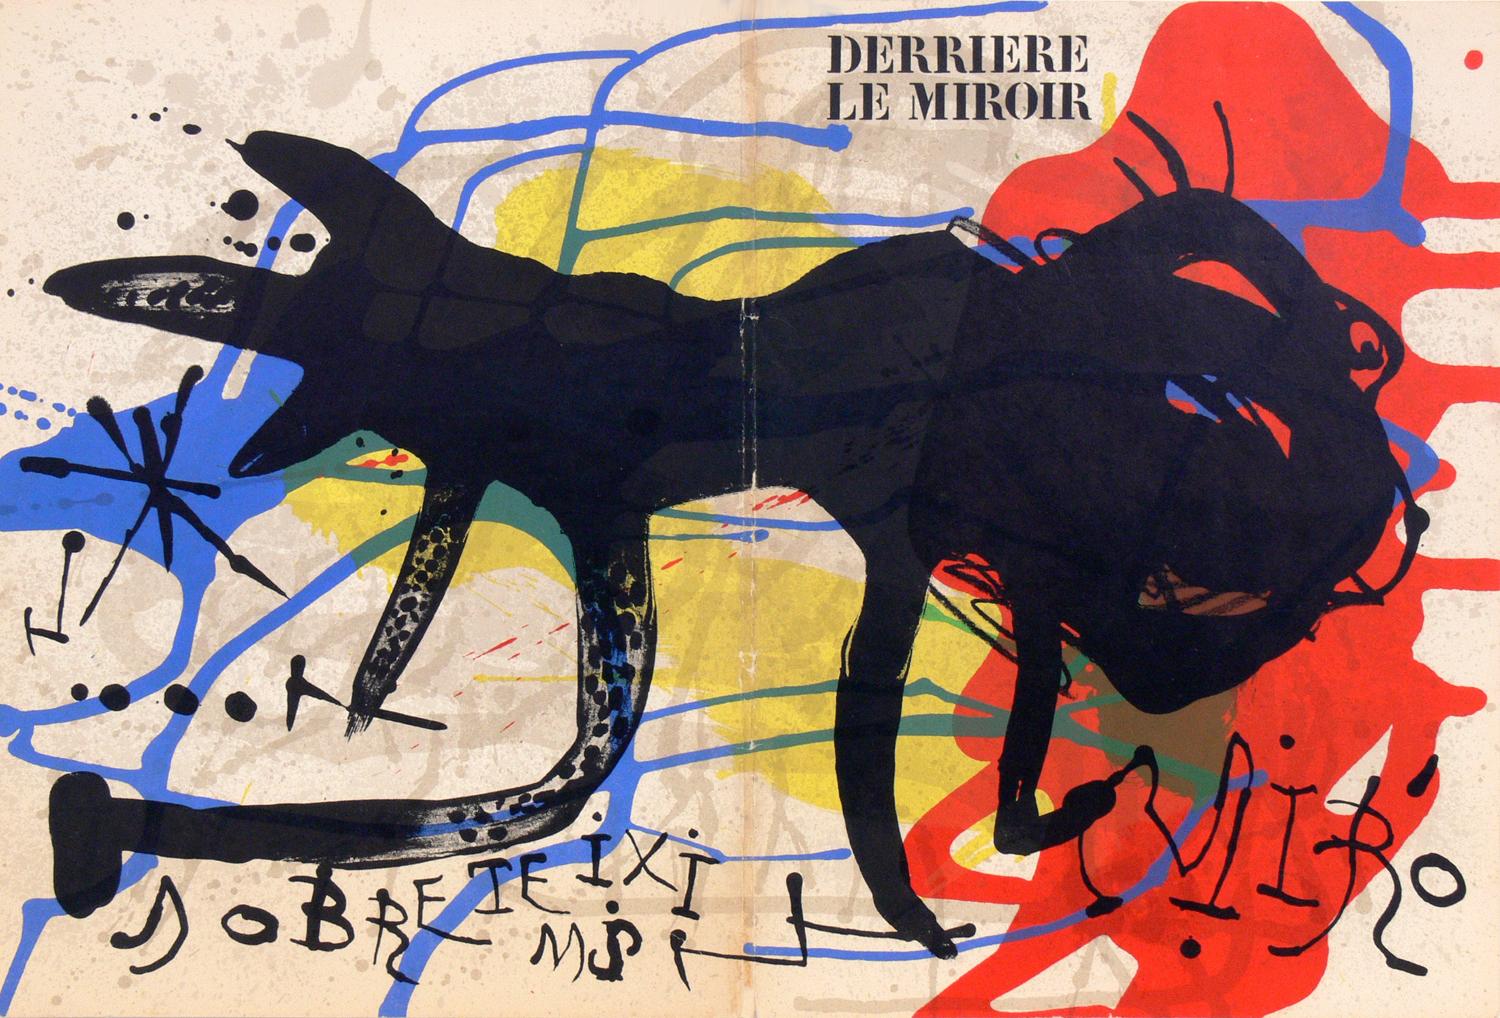 Auswahl modernistischer Lithografien oder Galeriewand, französisch, um 1960er Jahre. Von oben links nach rechts sind dies:
1) Farblithografie von Joan Miro, aus Derriere Le Miroir, ca. 1960er Jahre. Oben links zu sehen. Es misst 18,5